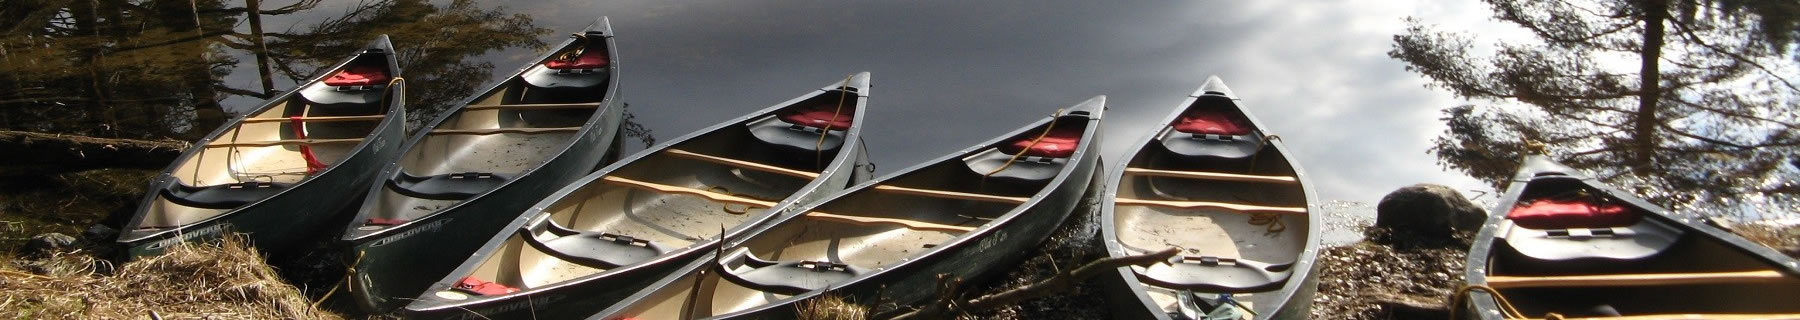 canoes at lakeside